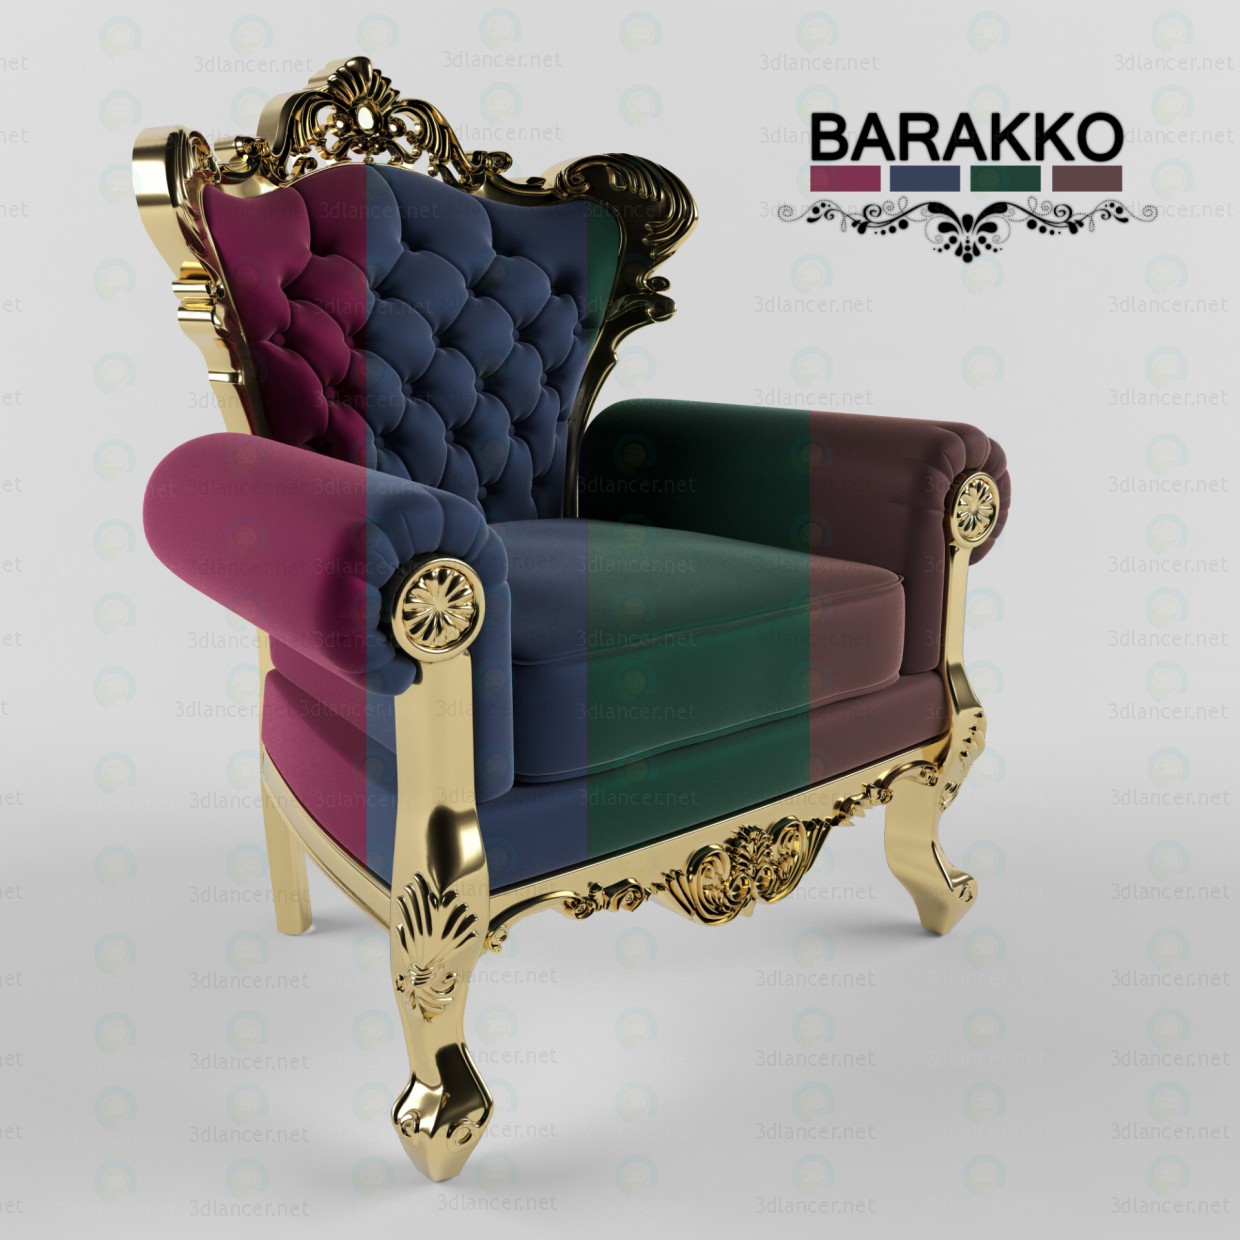 3d BARAKKO model buy - render